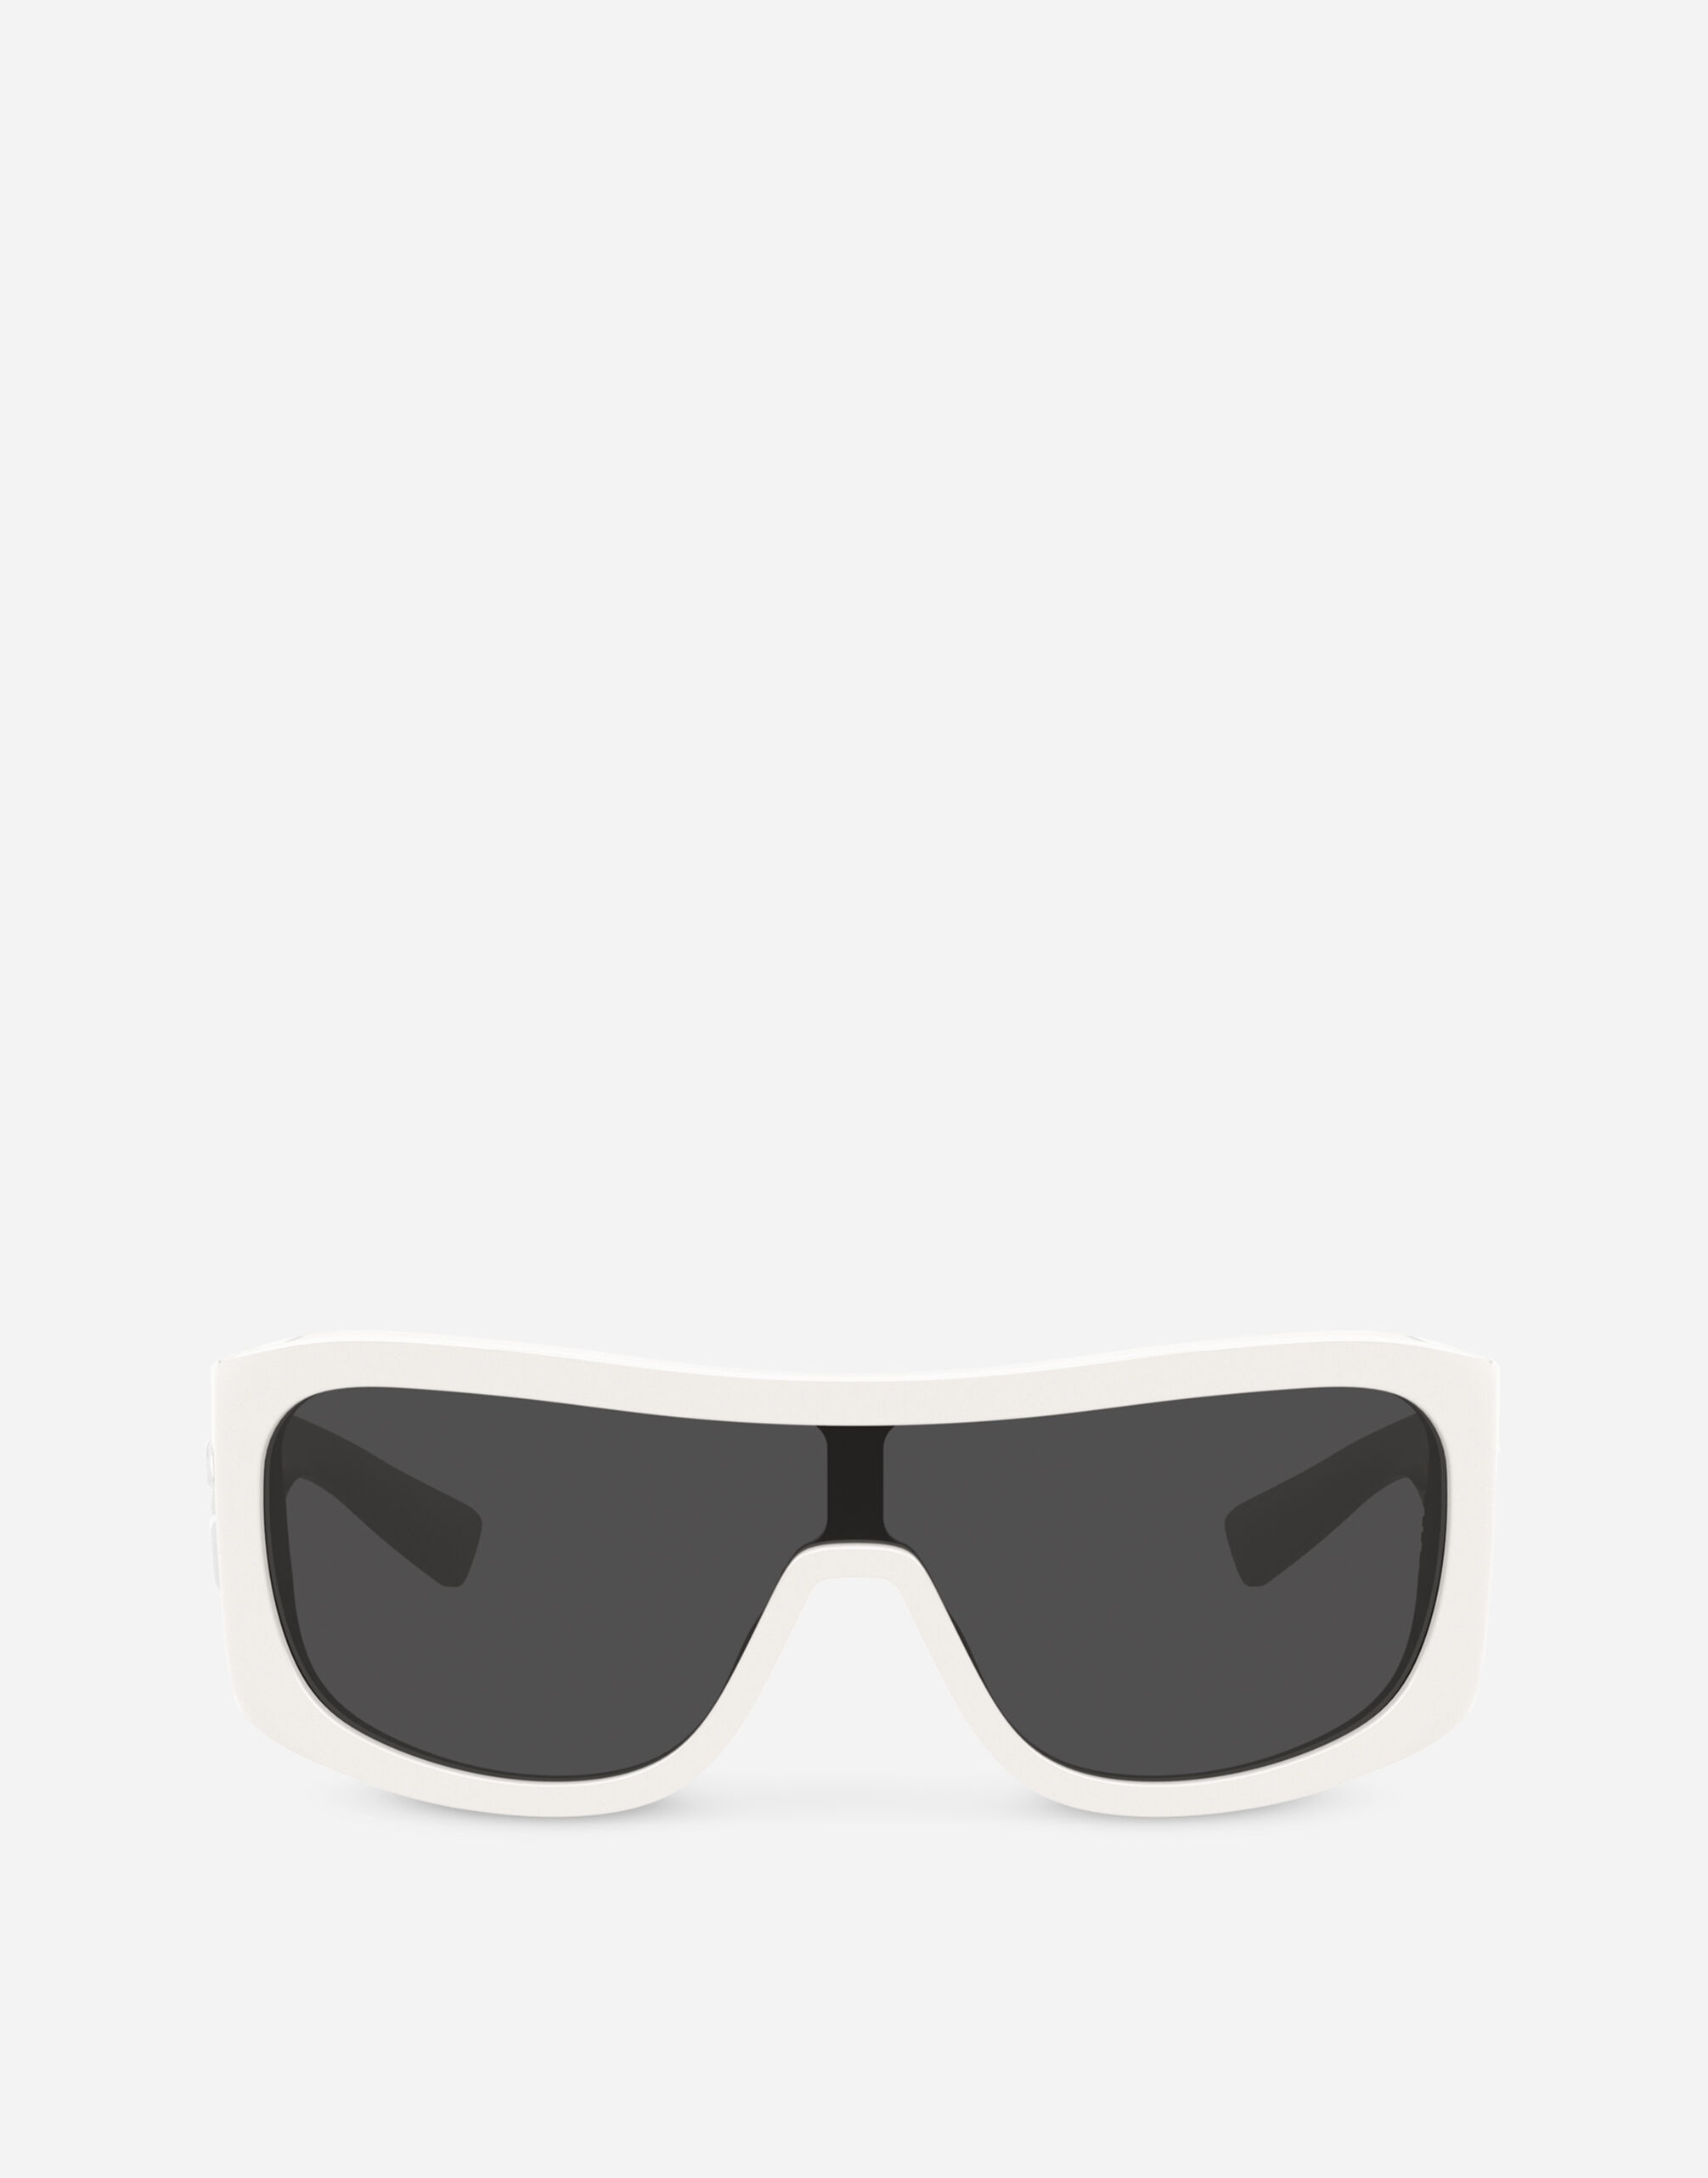 DG Crossed sunglasses - 1